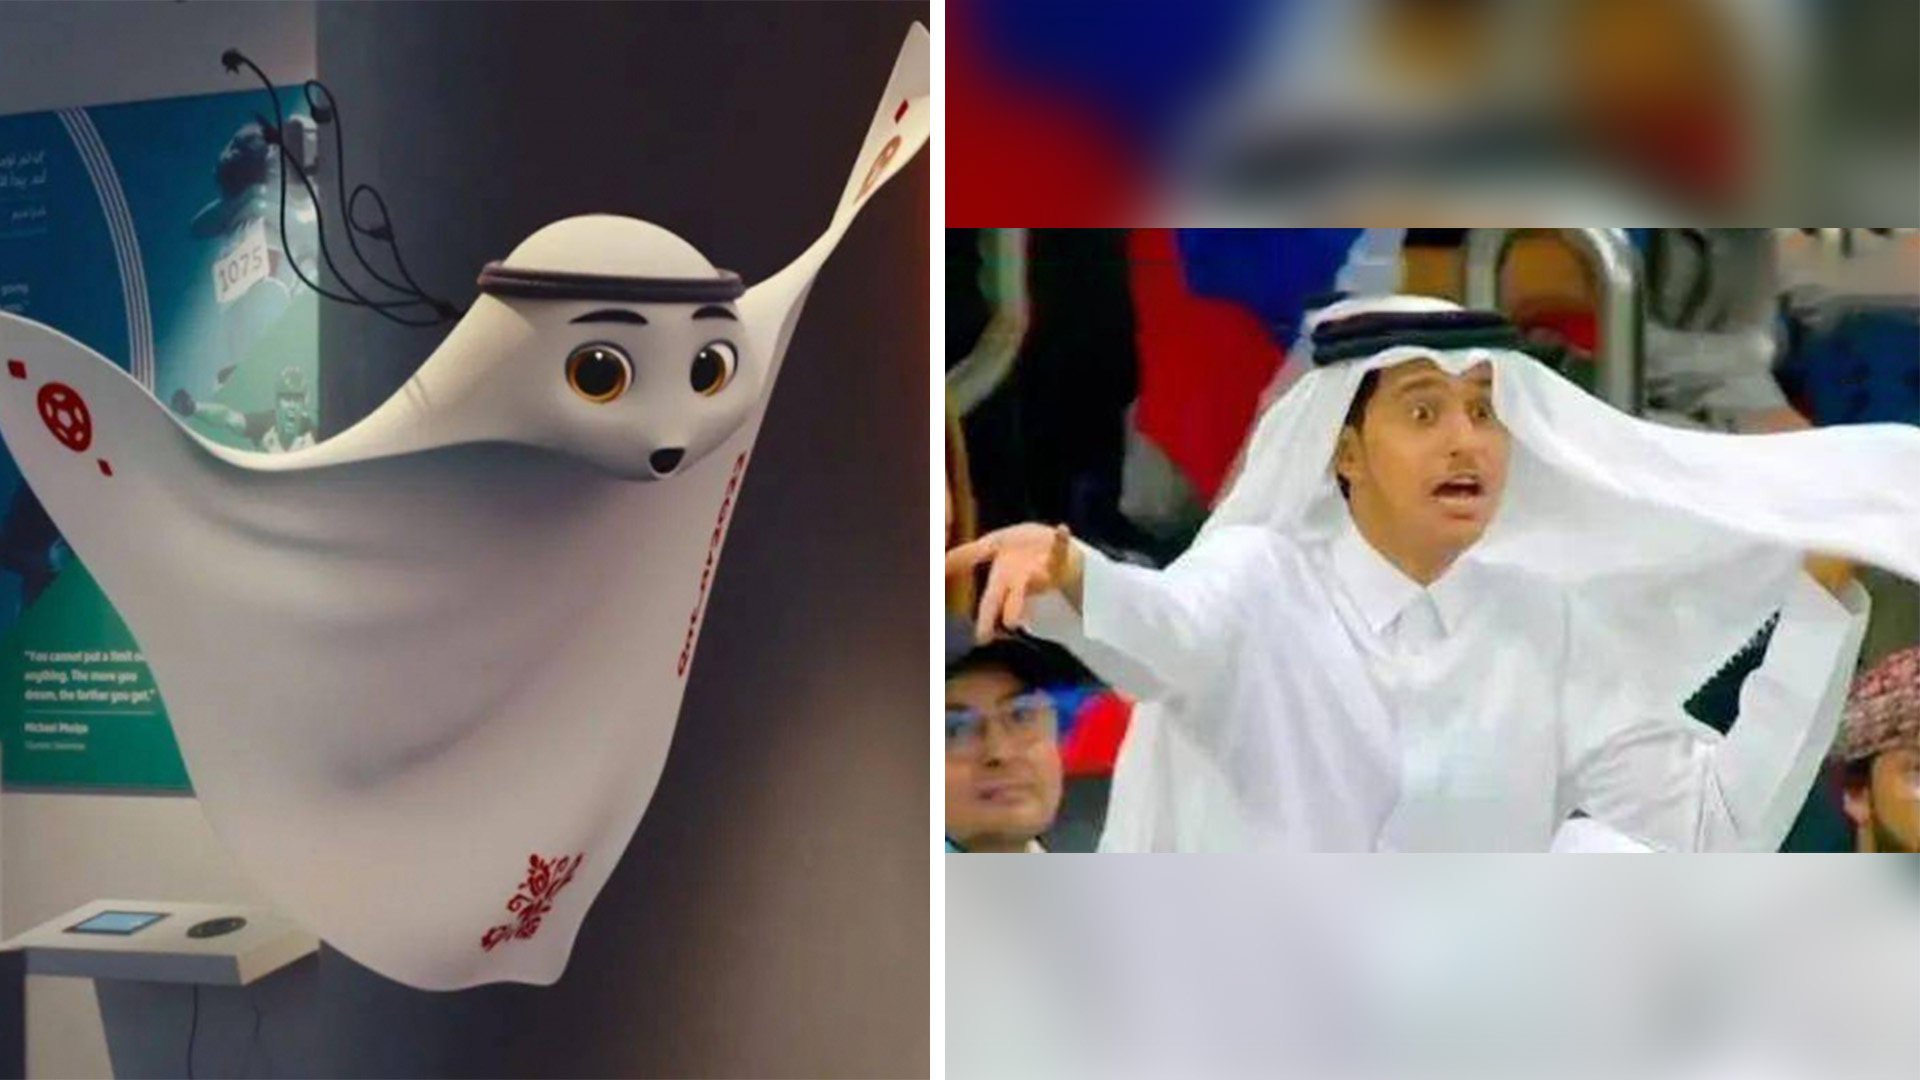 Royal teen at Qatar World Cup goes viral in China